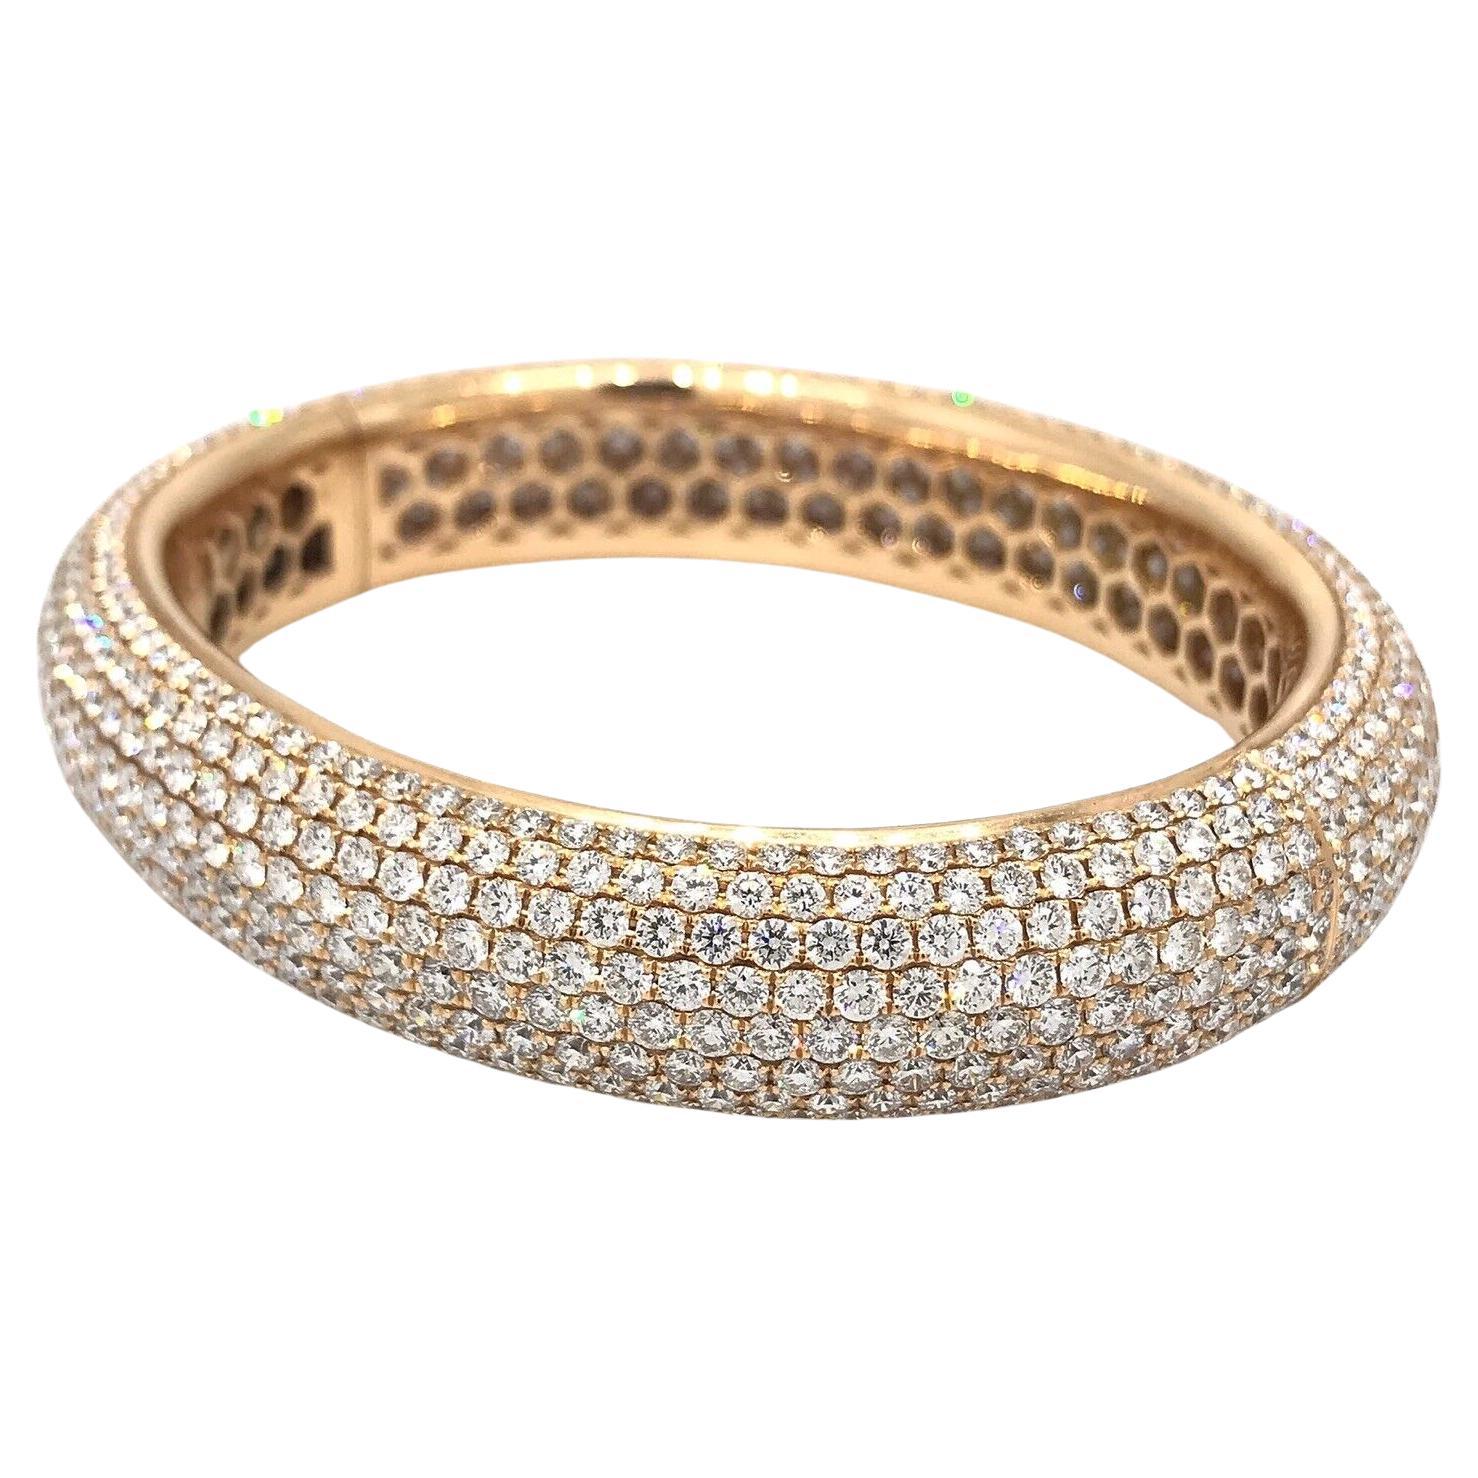 24.25 Carats Diamond Pave Bangle Bracelet in 18k Rose Gold